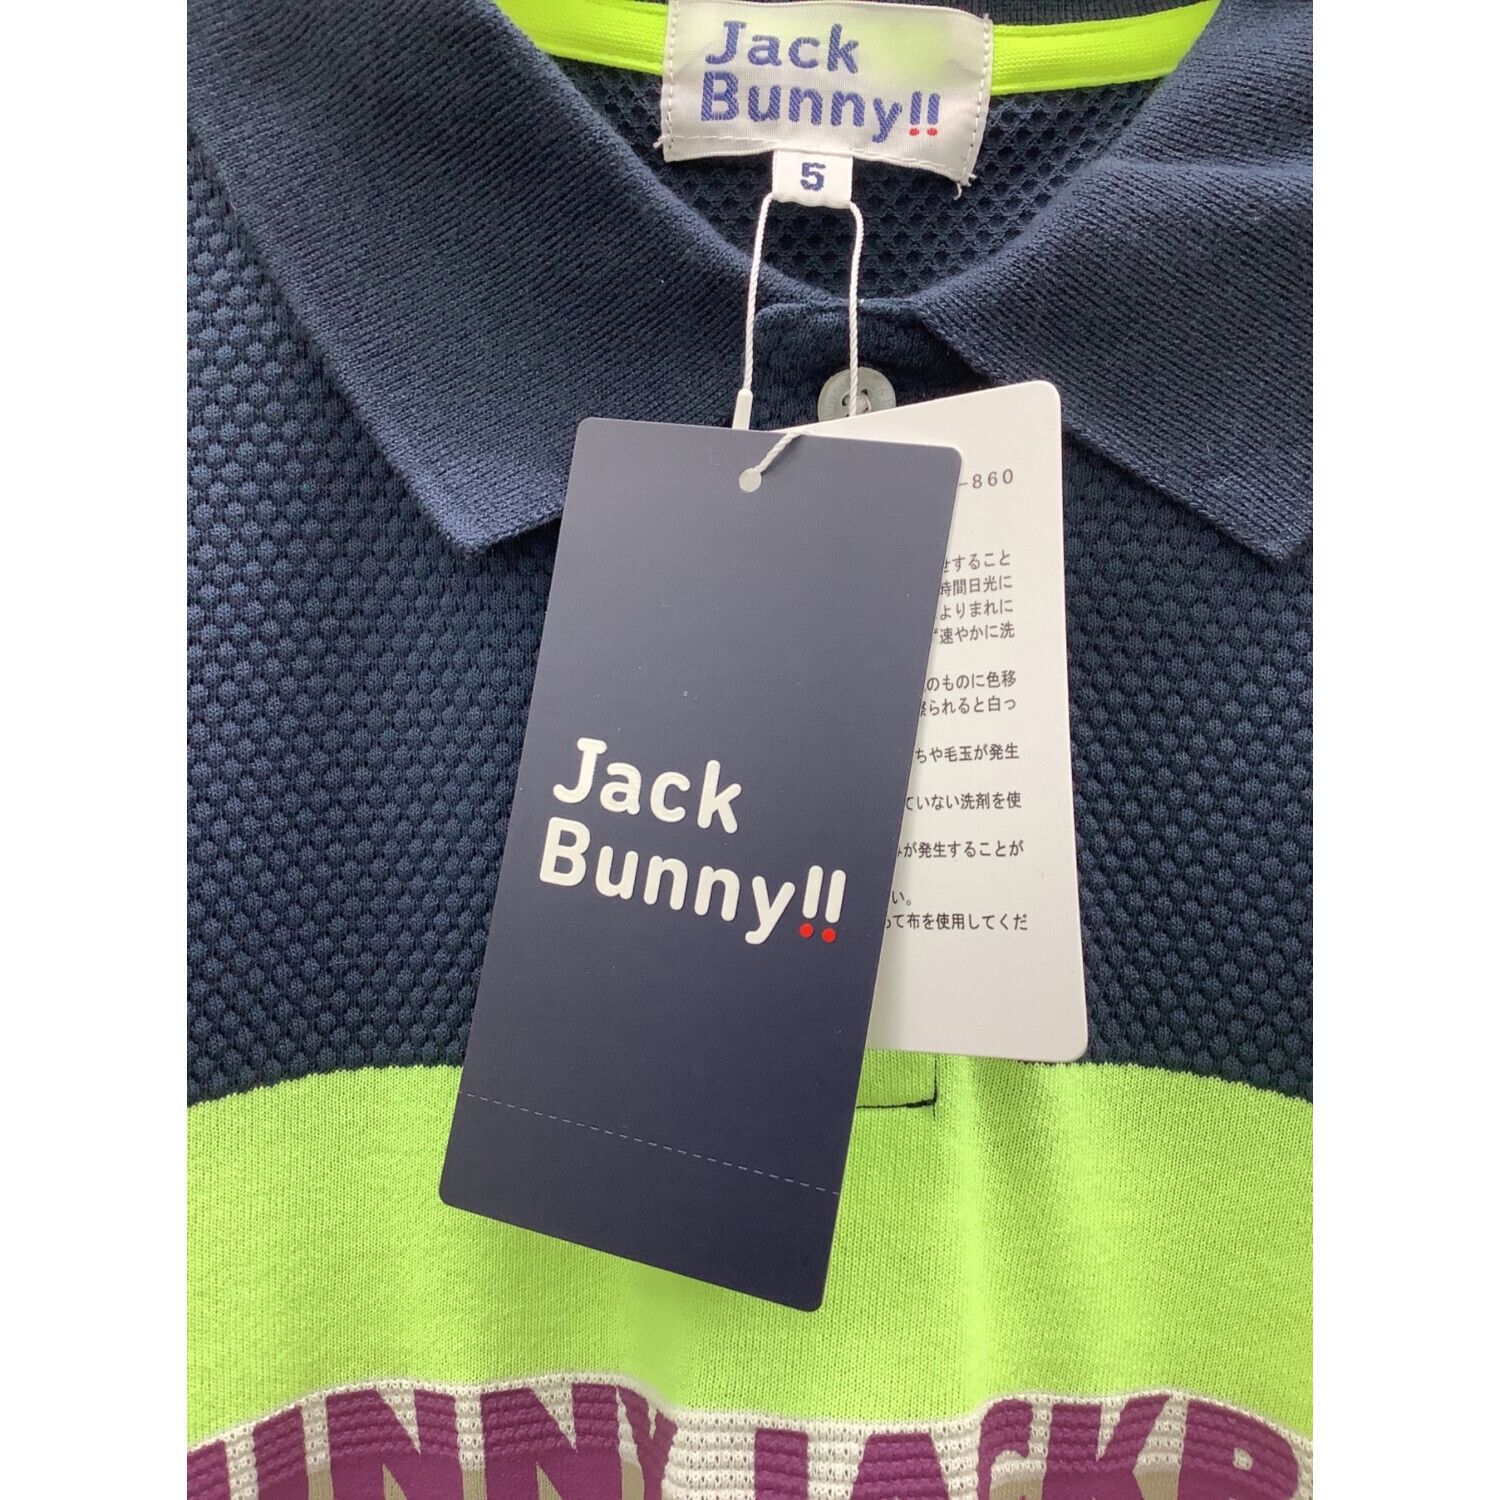 JACK BUNNY (ジャックバニー) ゴルフウェア(トップス) メンズ SIZE L 